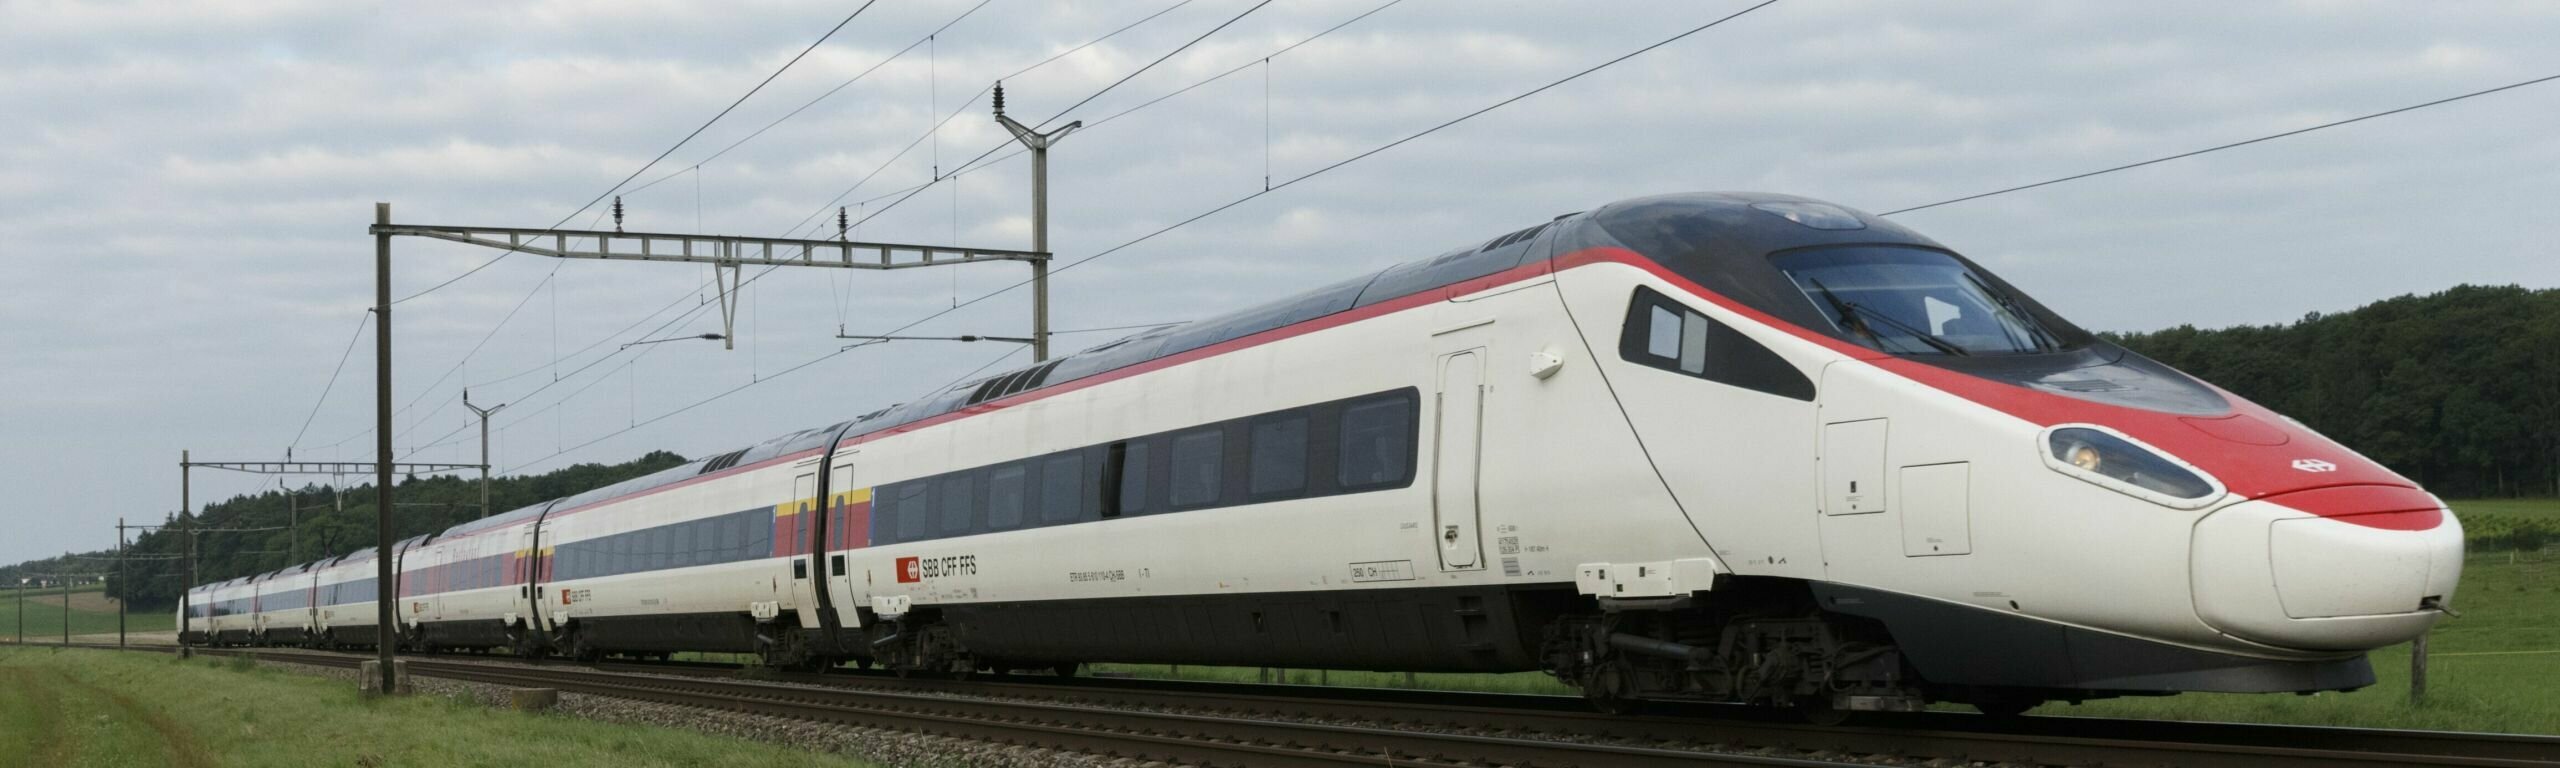 Der Zugtyp Astoro verkehrt zwischen Zürich und München